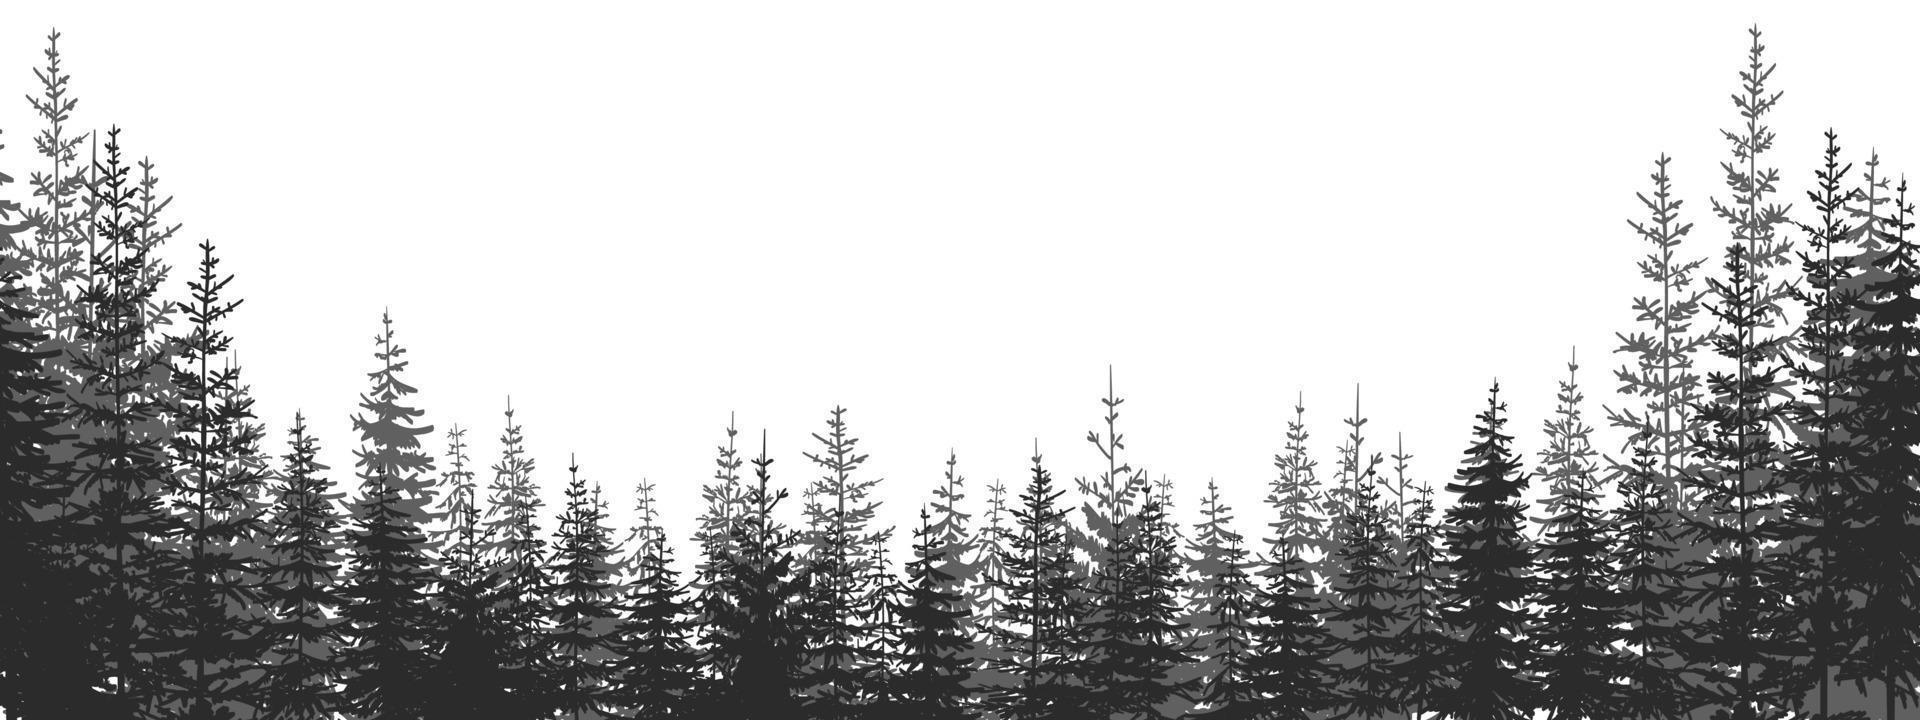 forêt. paysage forestier avec des silhouettes noires et blanches d'arbres. illustration vectorielle vecteur